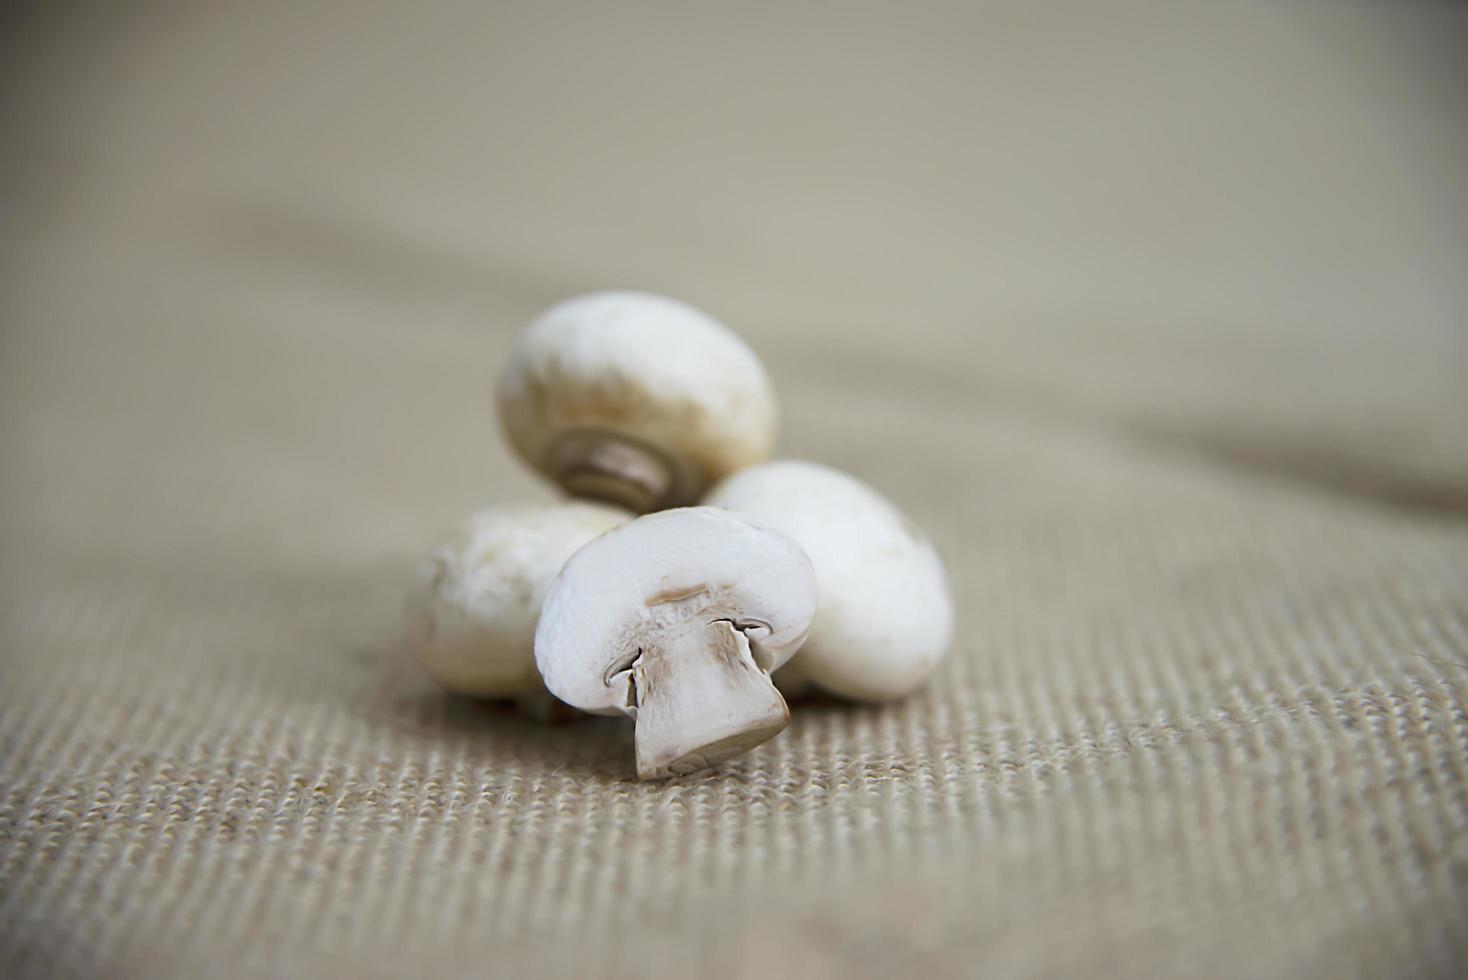 Fresh champignon mushroom vegetable in the kitchen - fresh mushroom vegetable cooking concept photo